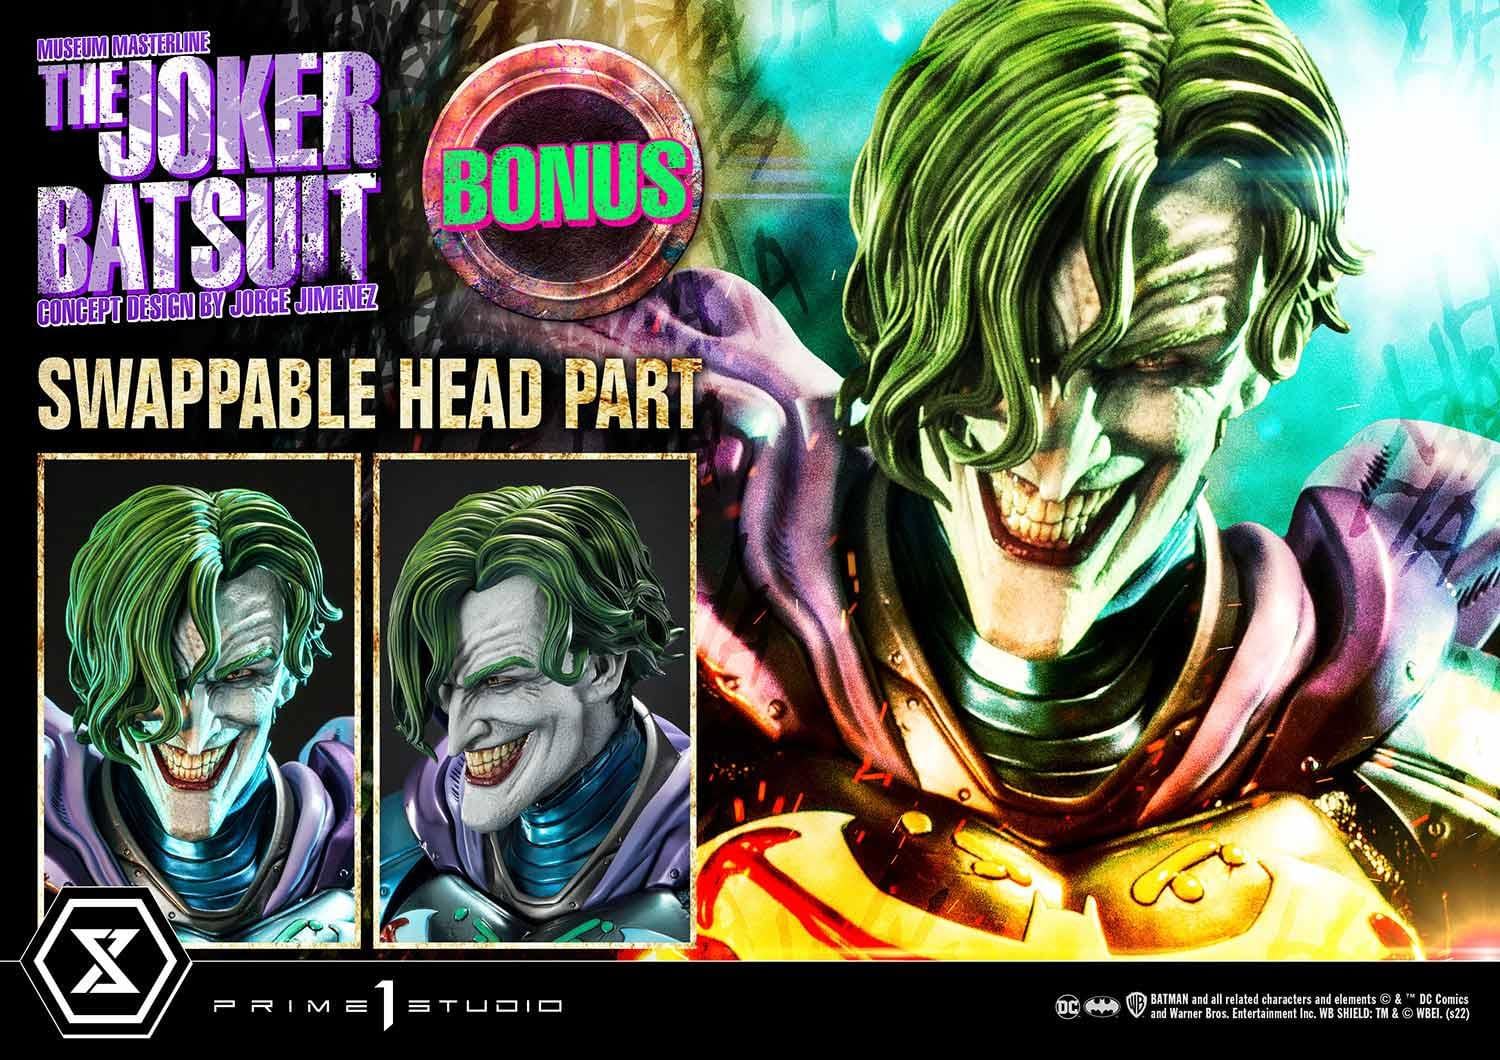 DC Comics Joker Wears His Own Batsuit with Prime 1 Studio